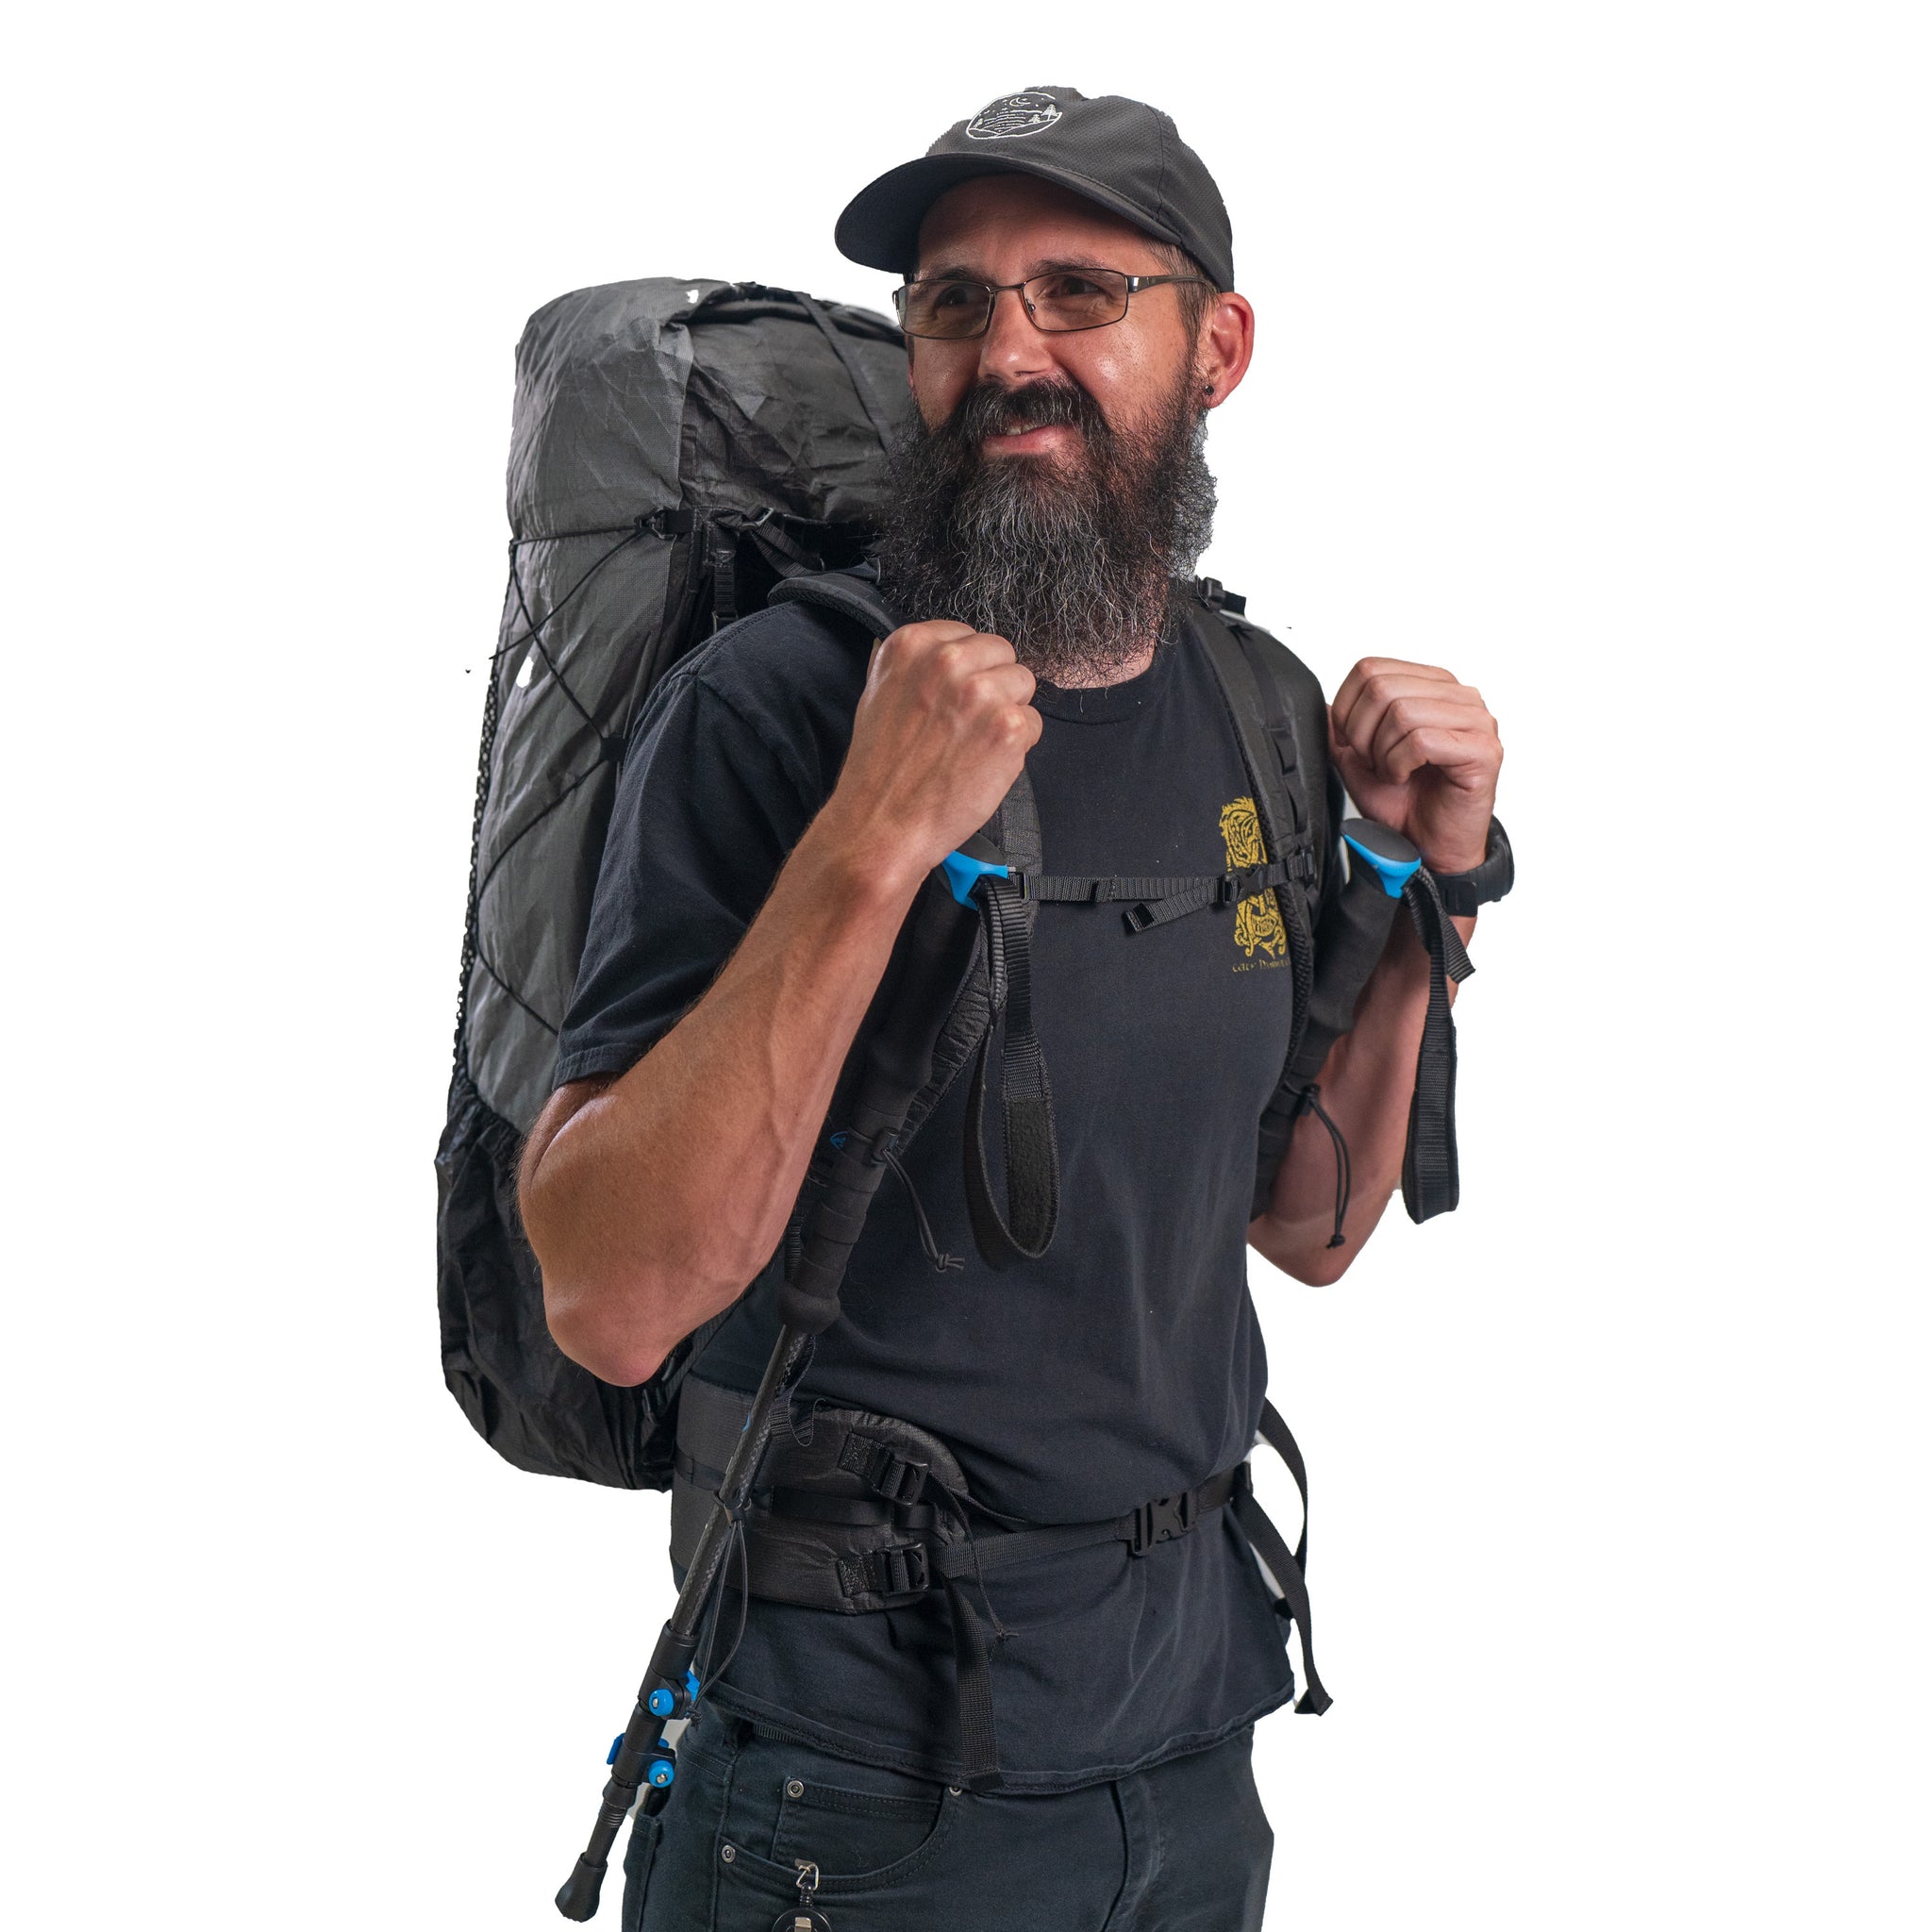 Ultralight Trekking Pole Holsters  Lightest Backpacking & Hiking – Zpacks